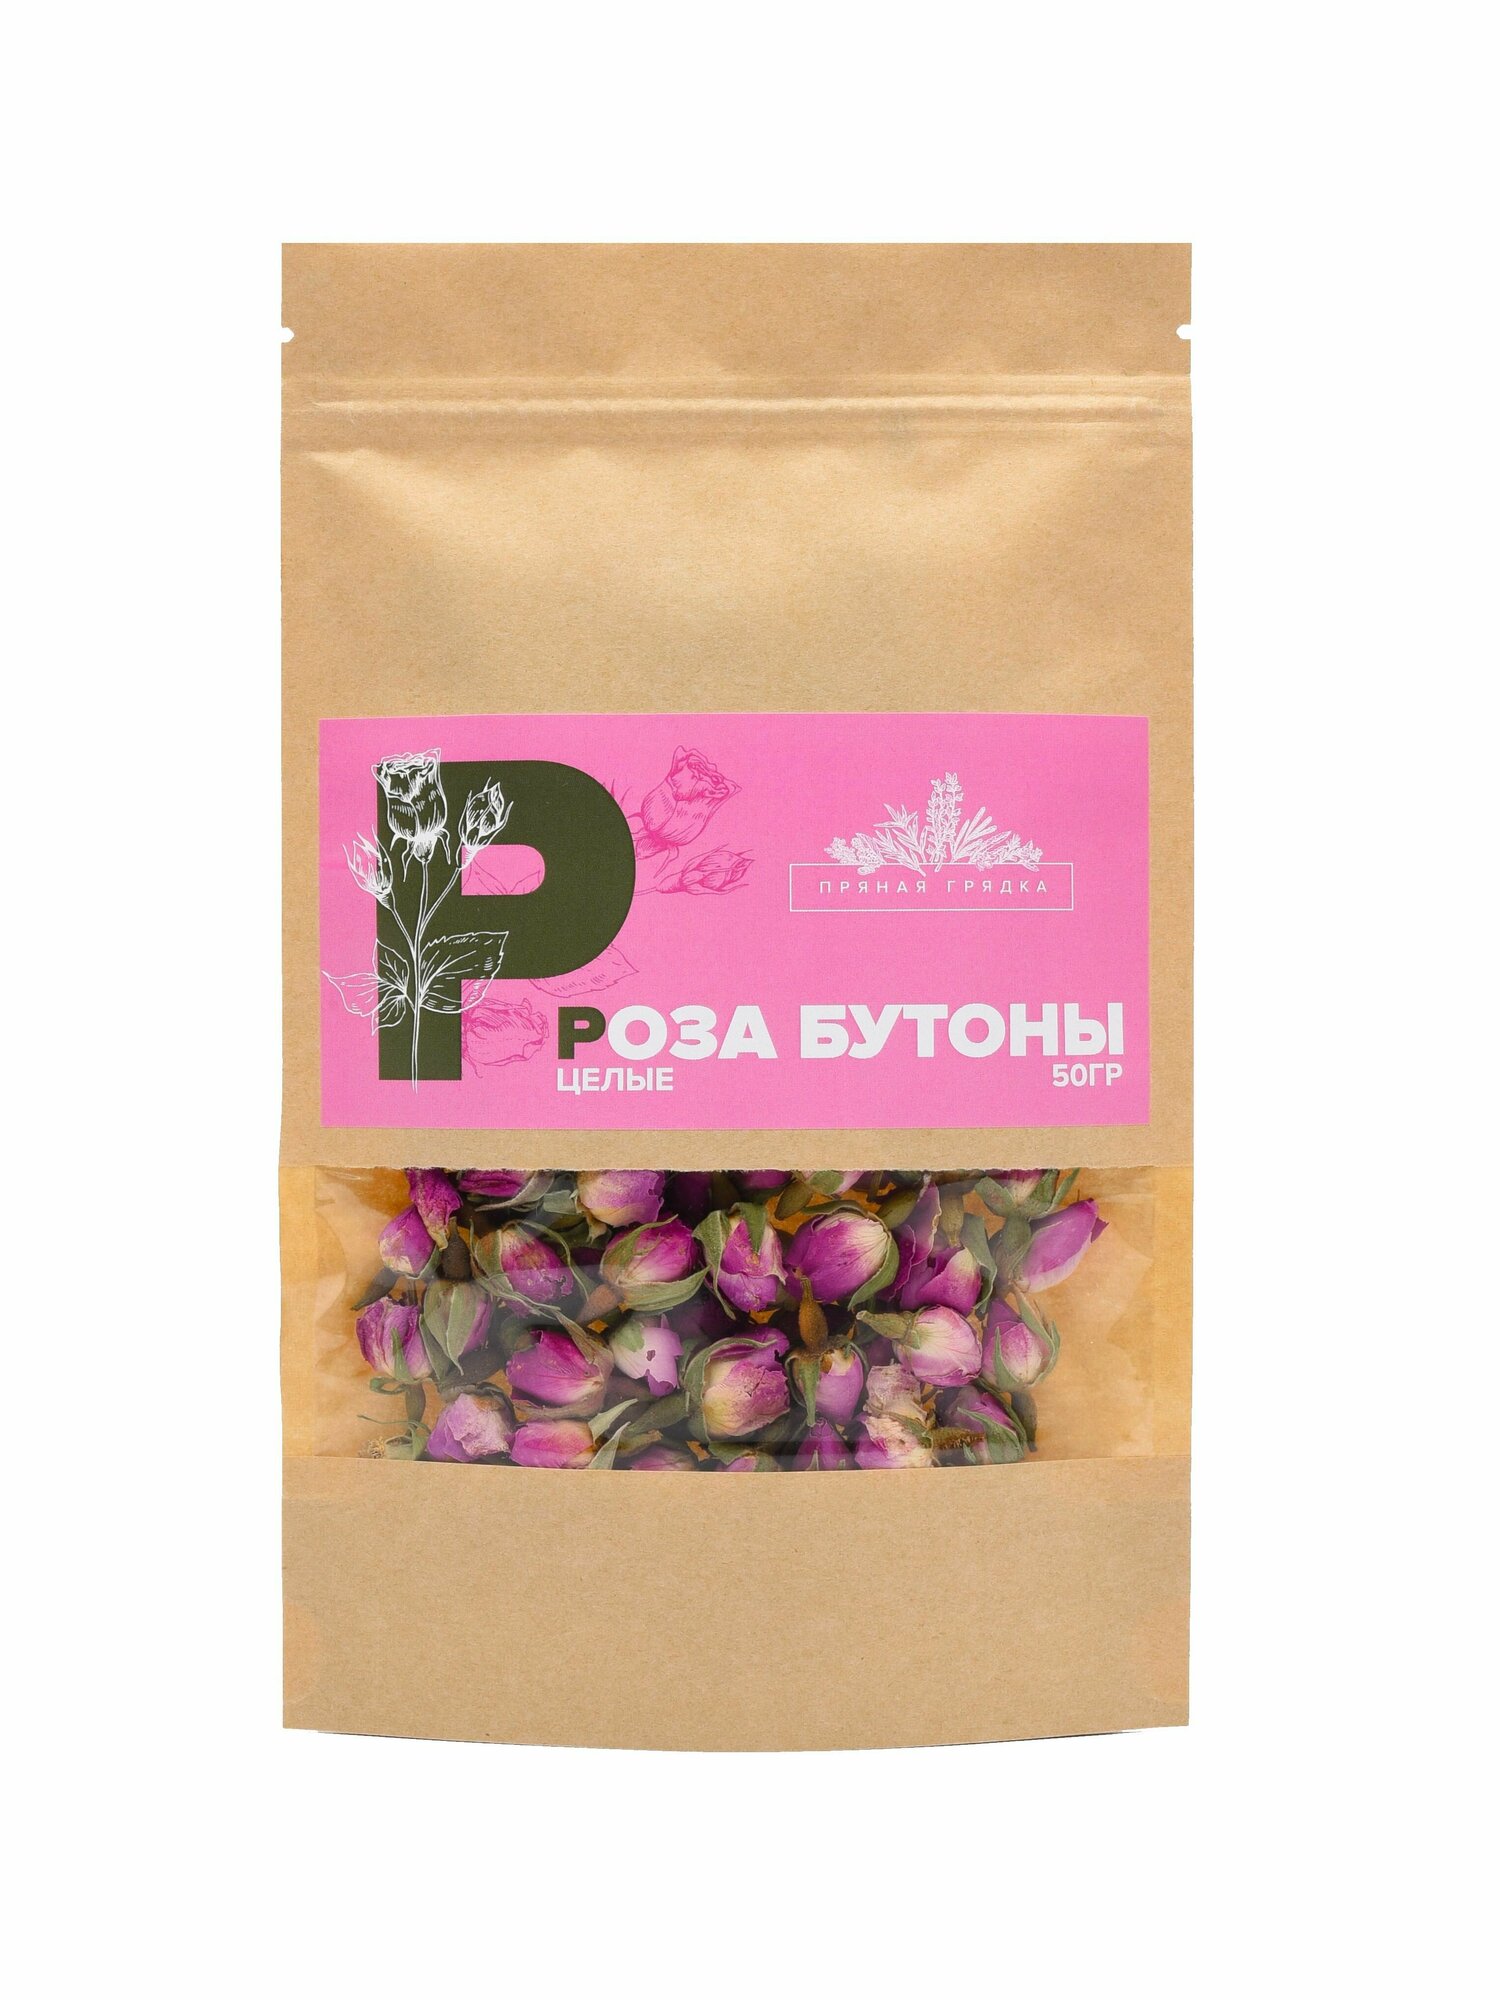 Роза бутоны сушеные (чай из розы), 50 гр